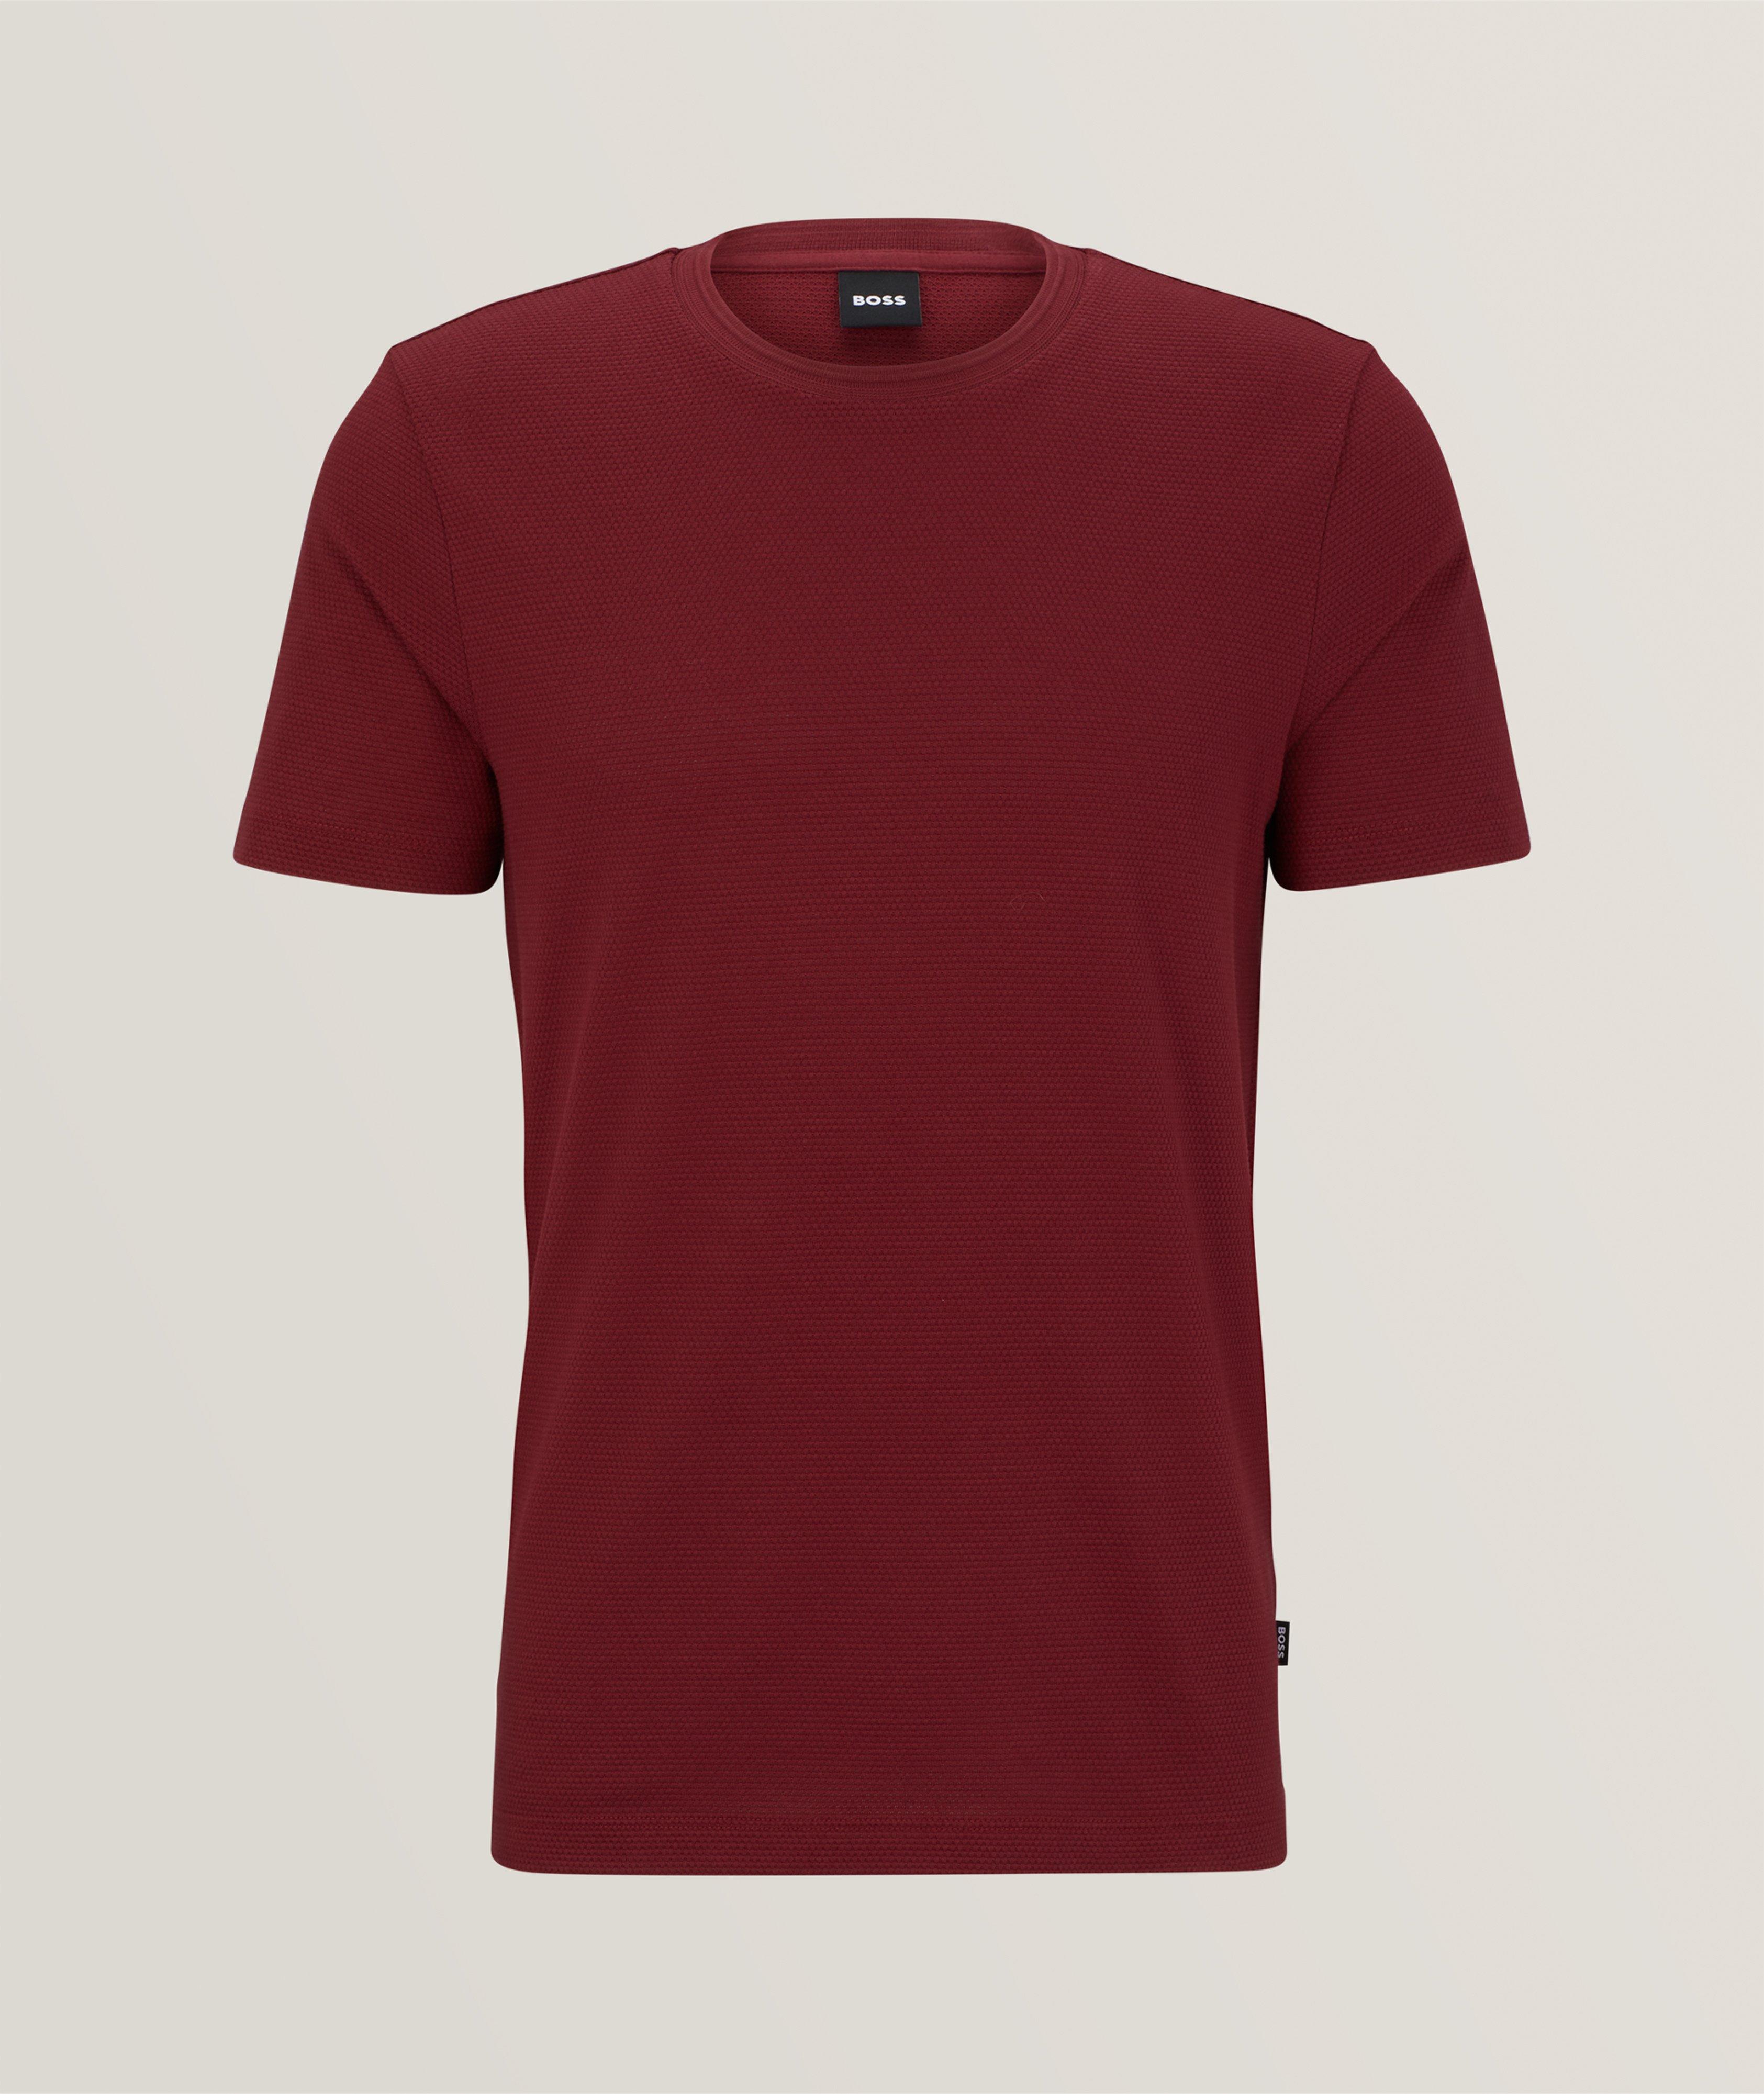 Tiburt Jacquard Cotton-Blend T-Shirt image 0